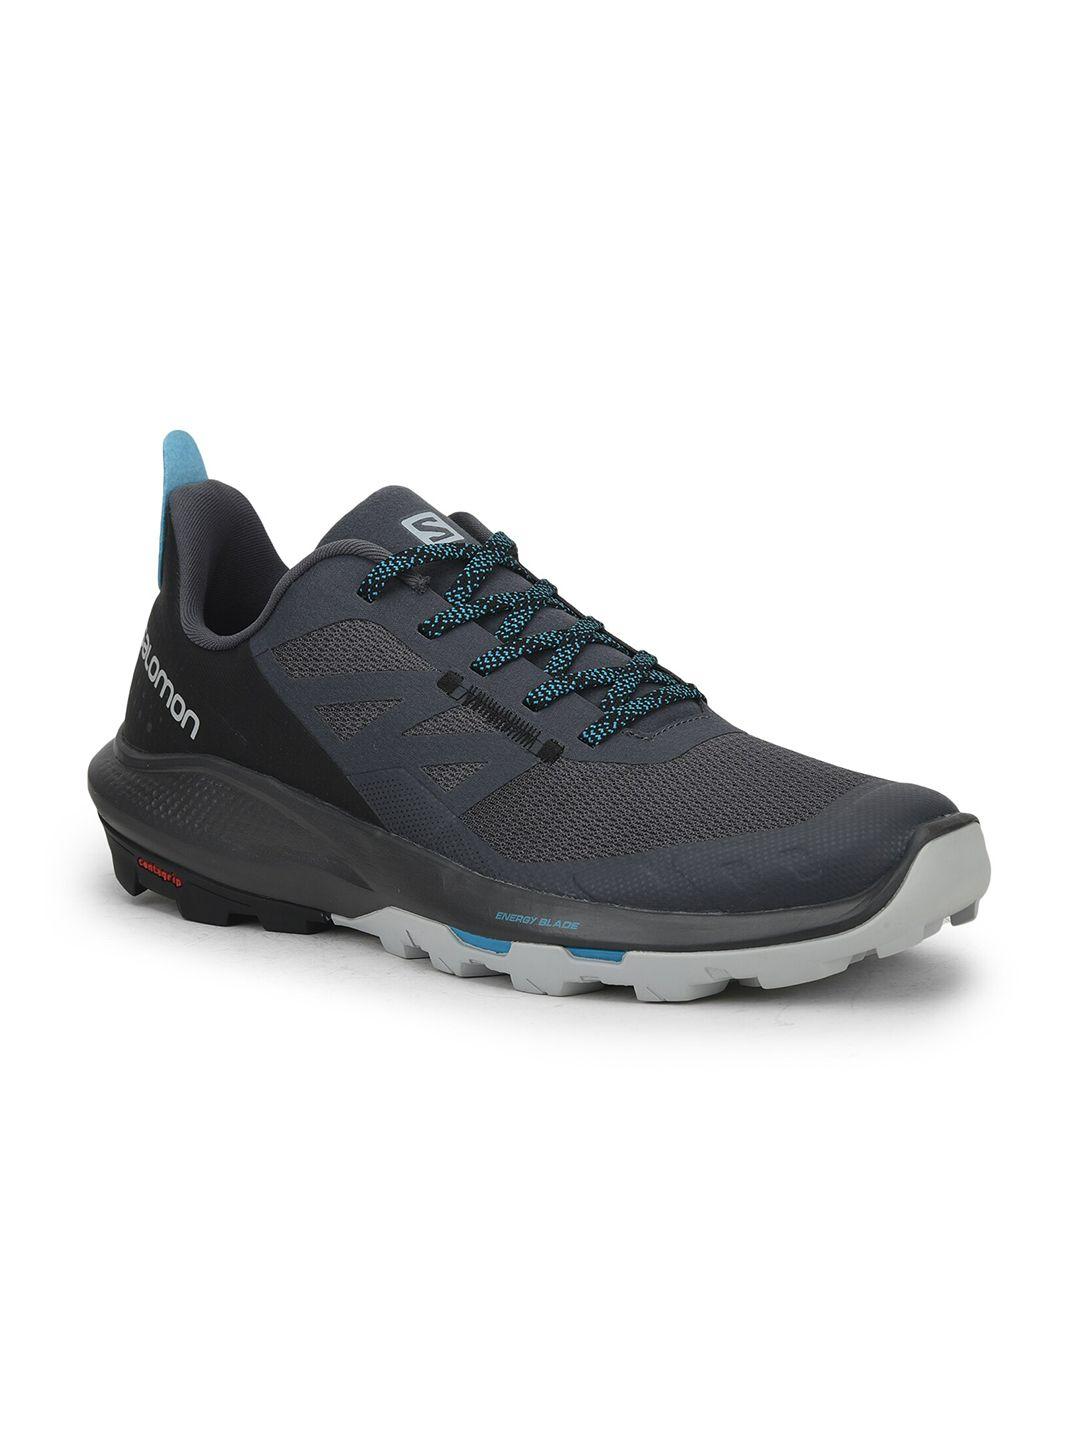 salomon-men-outpulse-contagrip-technology-hiking-shoes